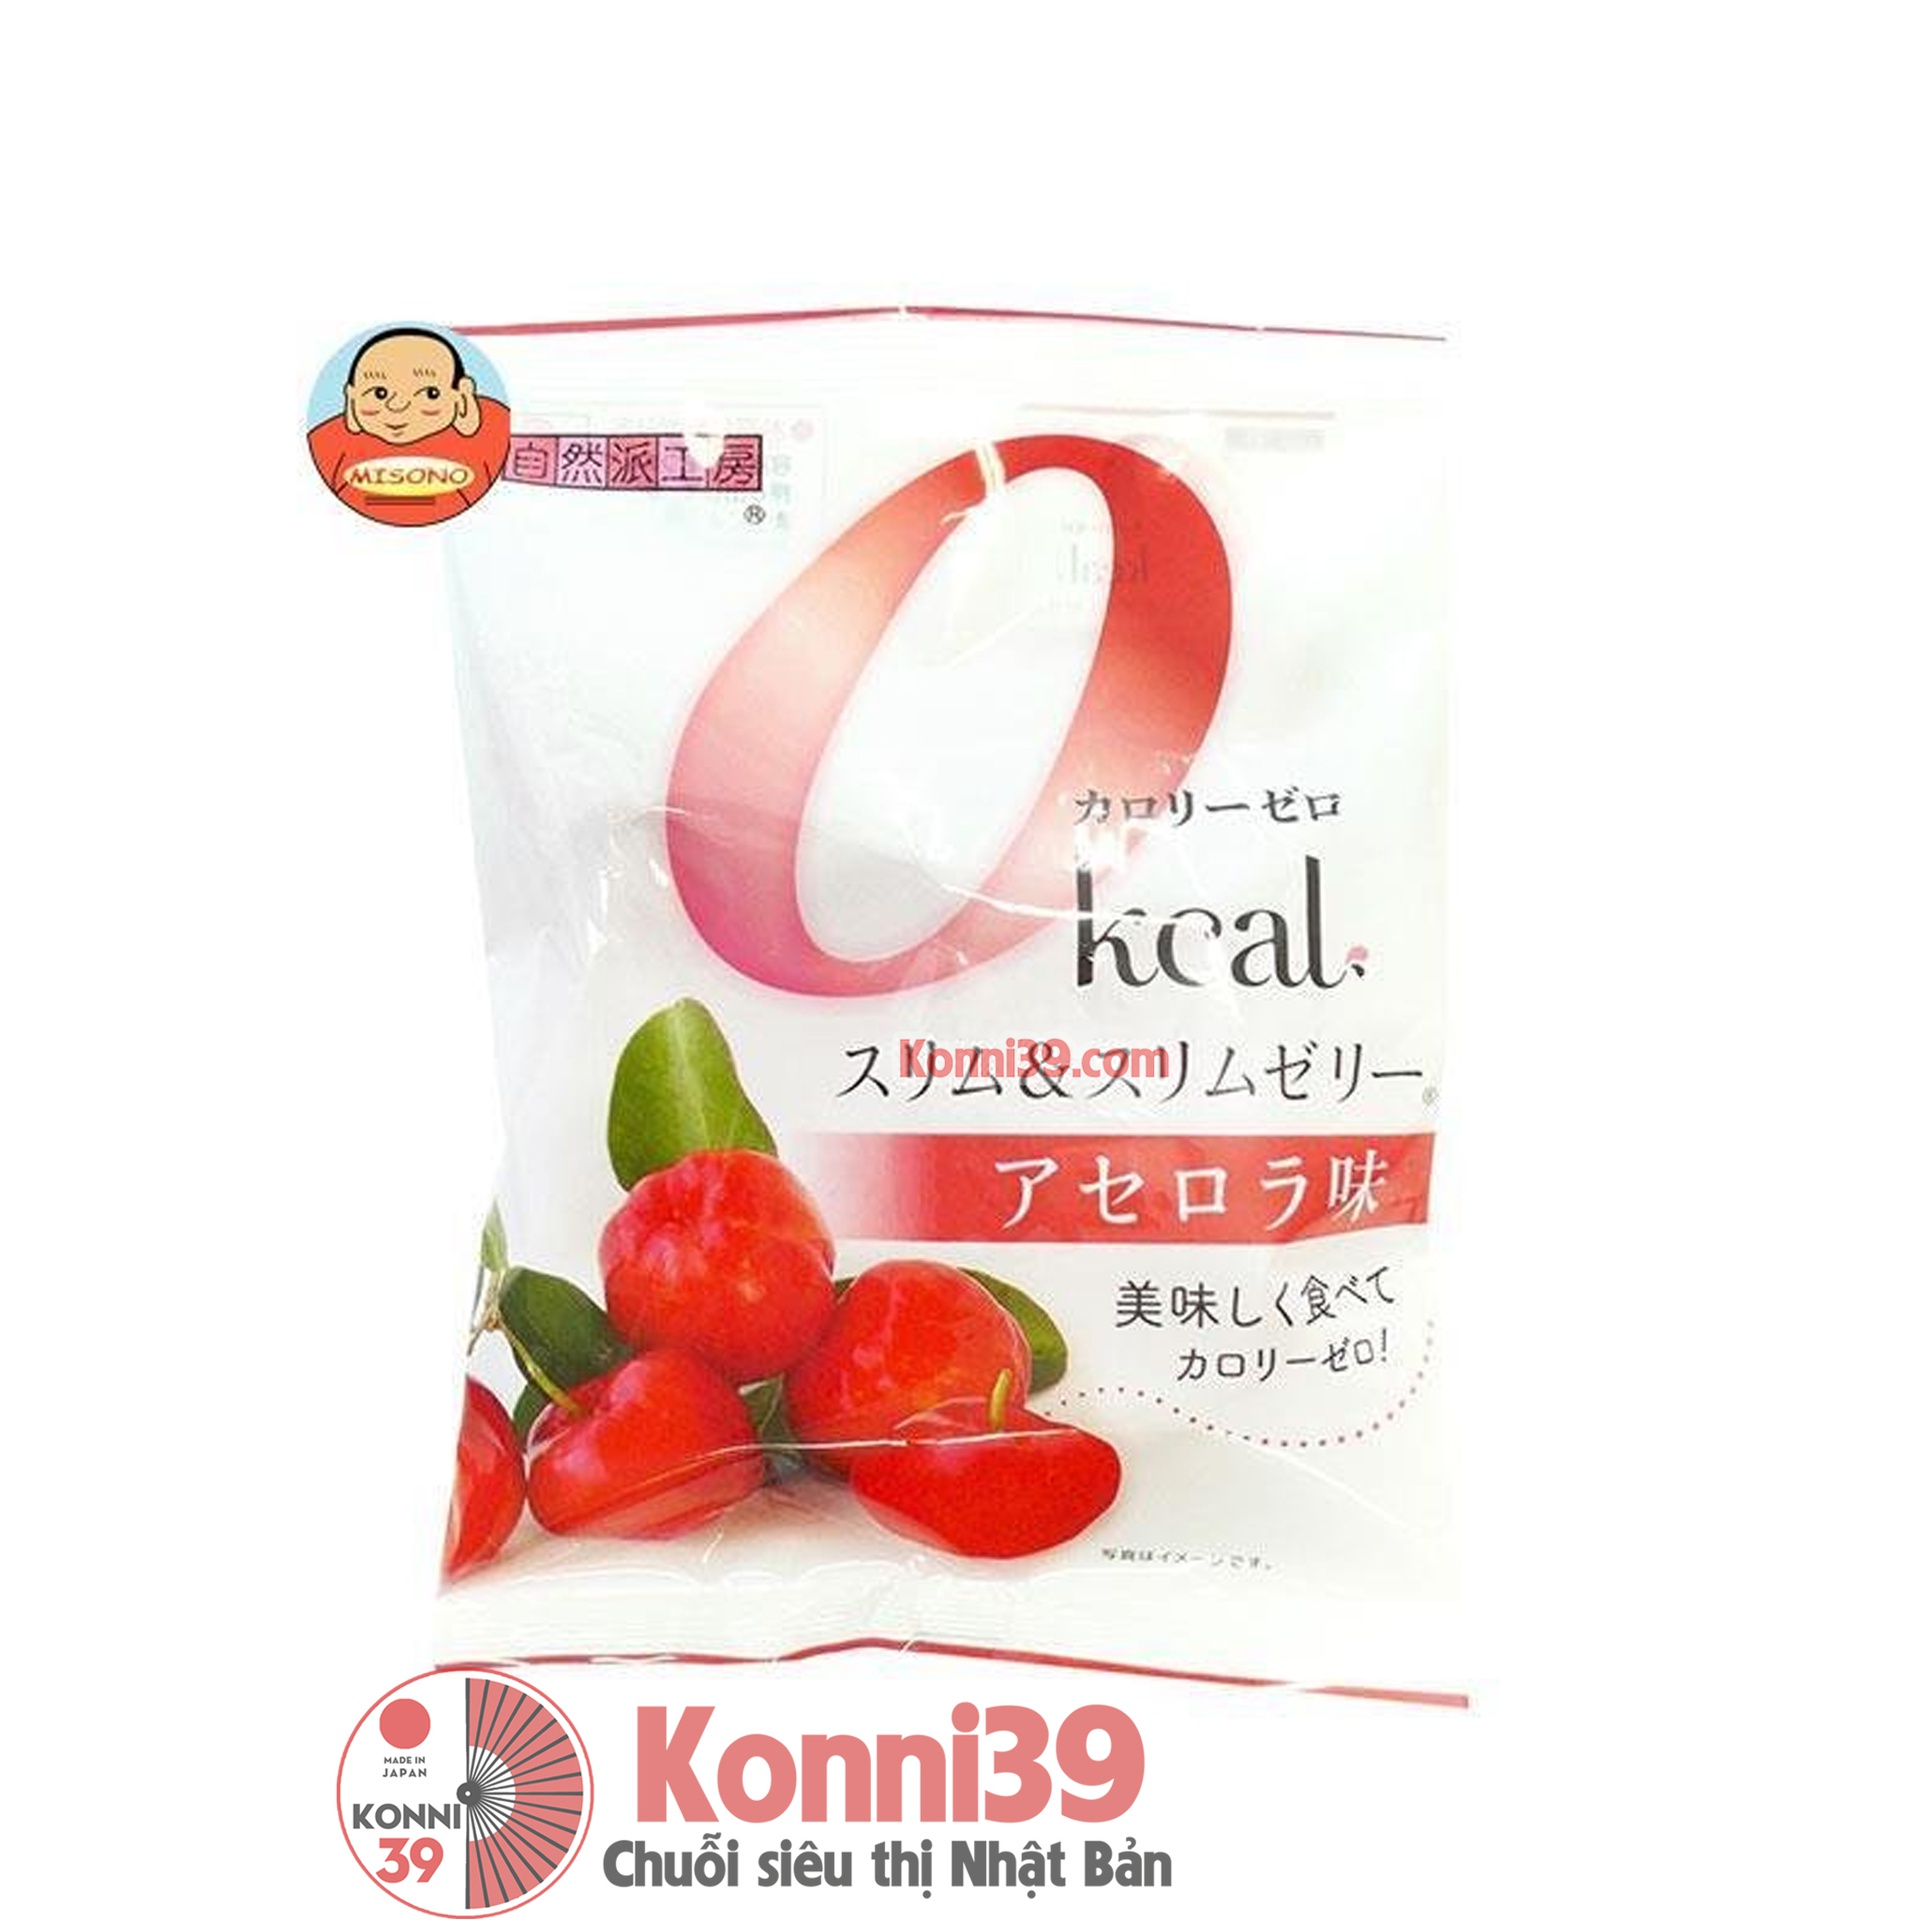 Thạch trái cây Slim &amp; Slim Jelly không chứa Calo gói 22g - vị Sơ Ri -  Chuỗi siêu thị Nhật Bản nội địa - Made in Japan Konni39 tại Việt Nam